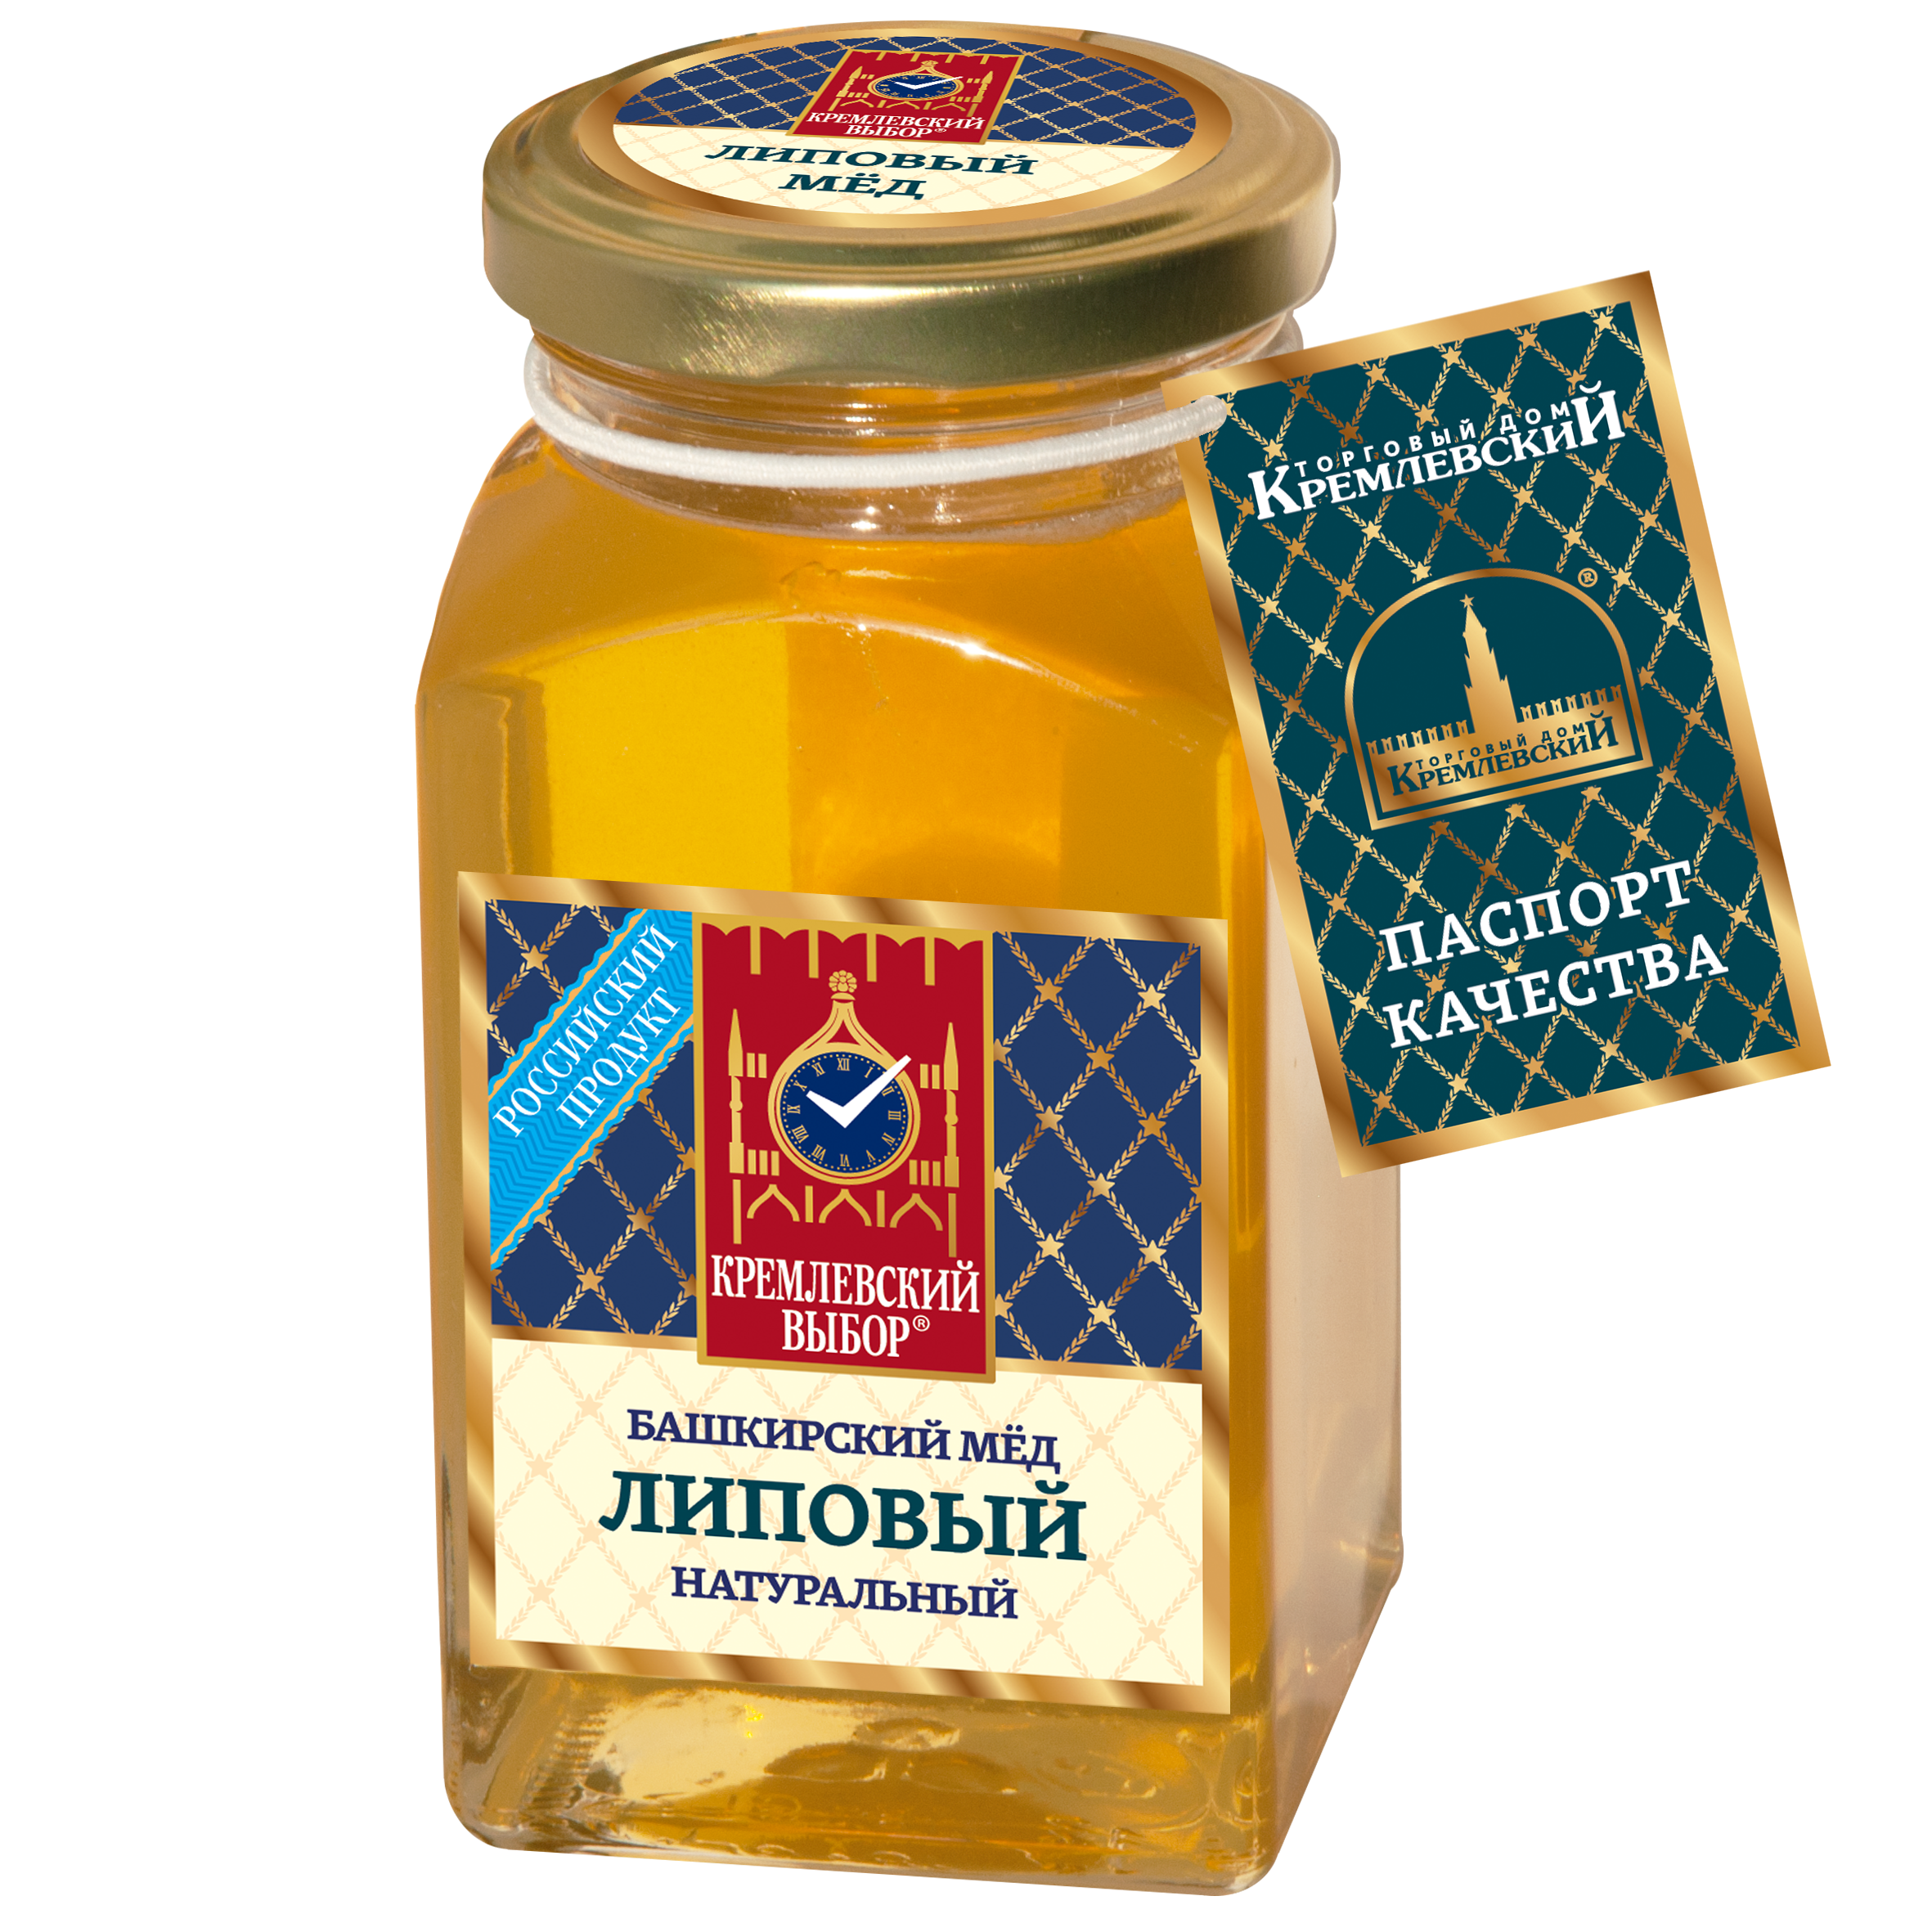 Башкирский мёд липовый натуральный, 400 г - купить в Москве с доставкой на  дом